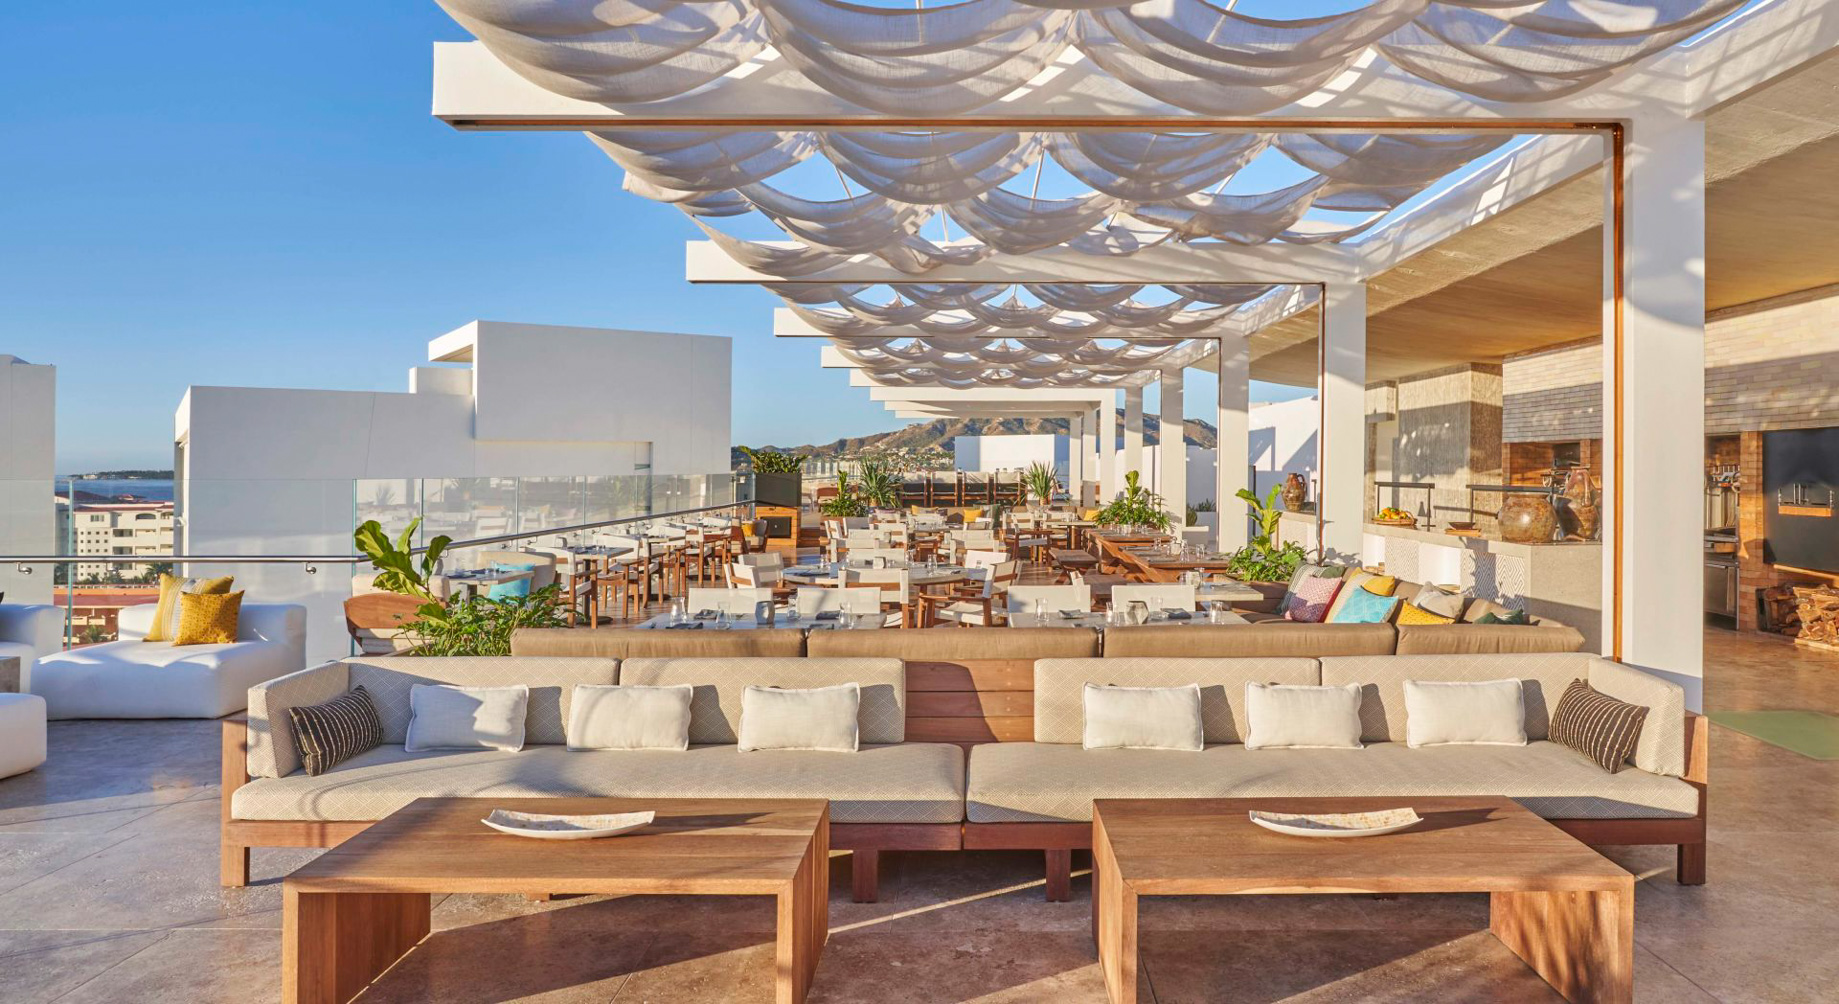 Viceroy Los Cabos Resort – San José del Cabo, Mexico – Cielomar Rooftop Restaurant